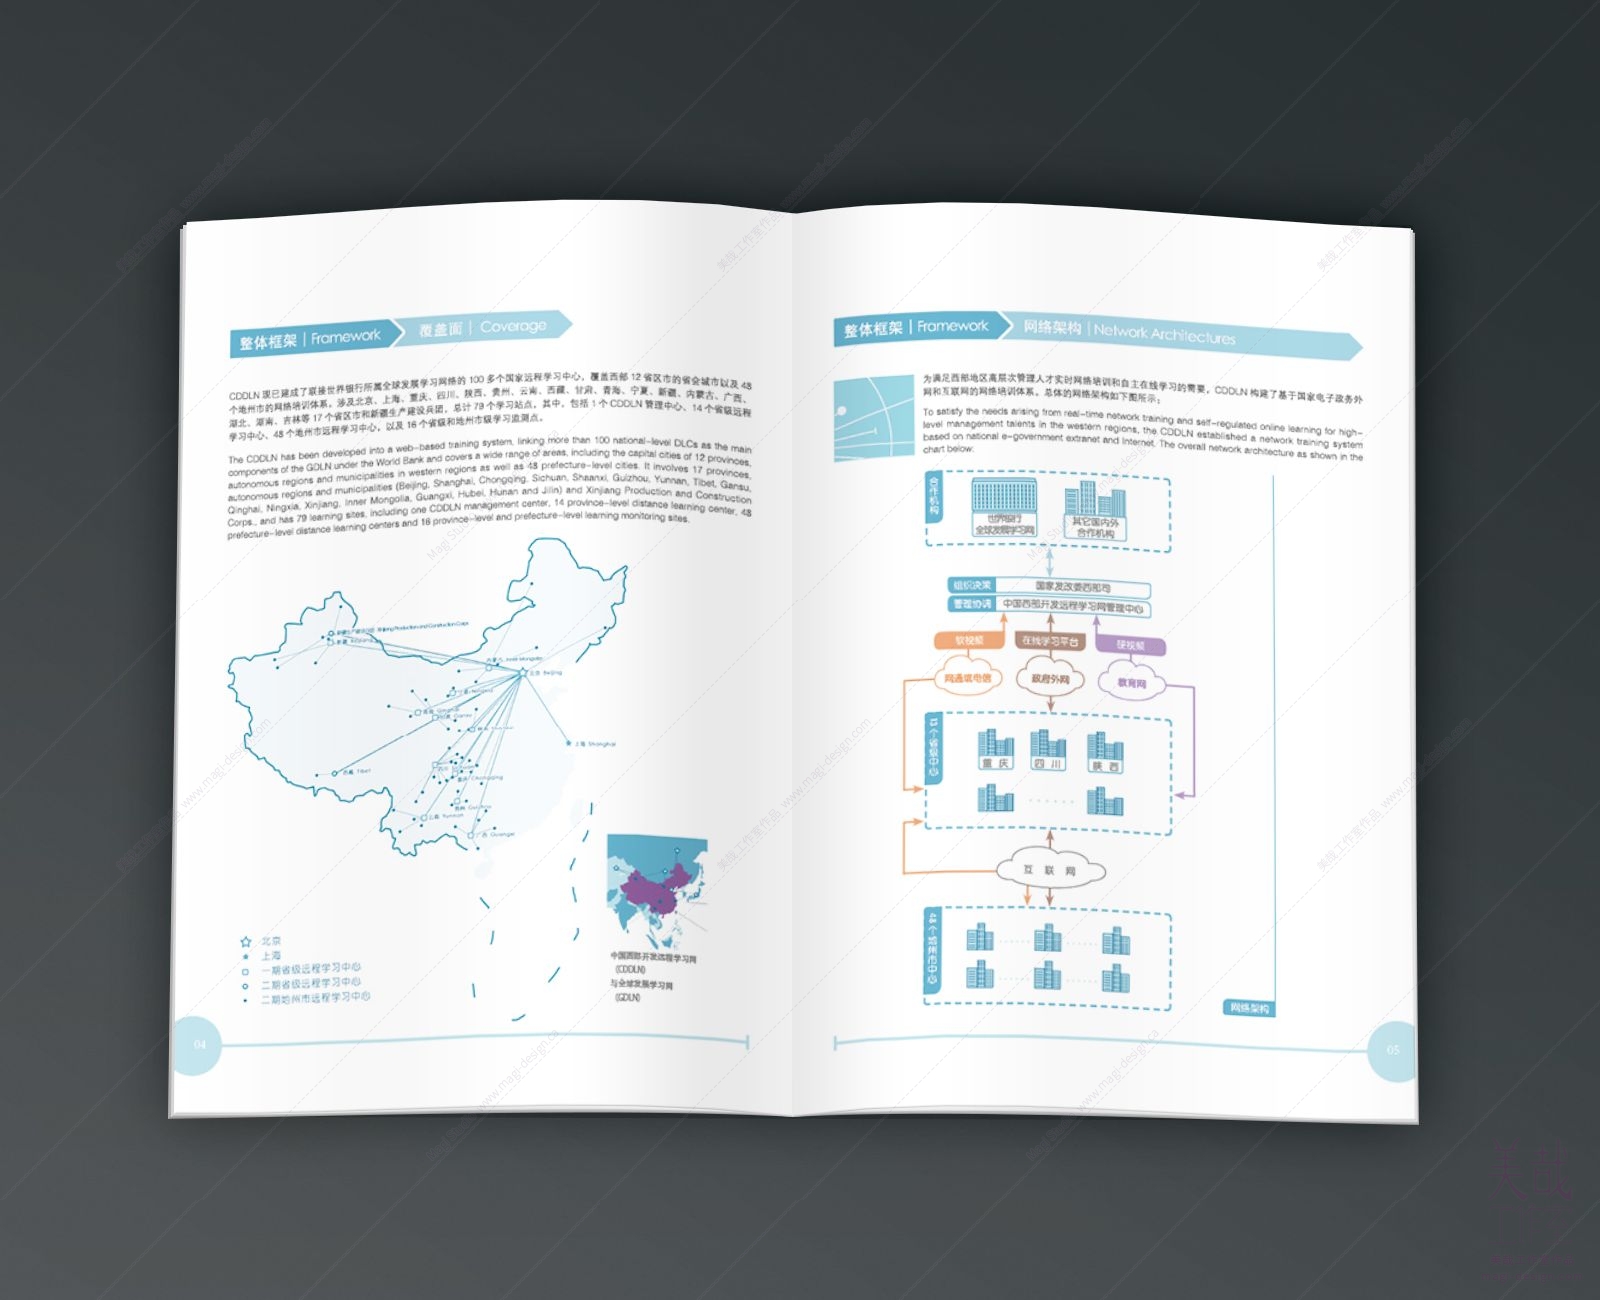 中国西部开发远程学习网宣传册的内页设计展示